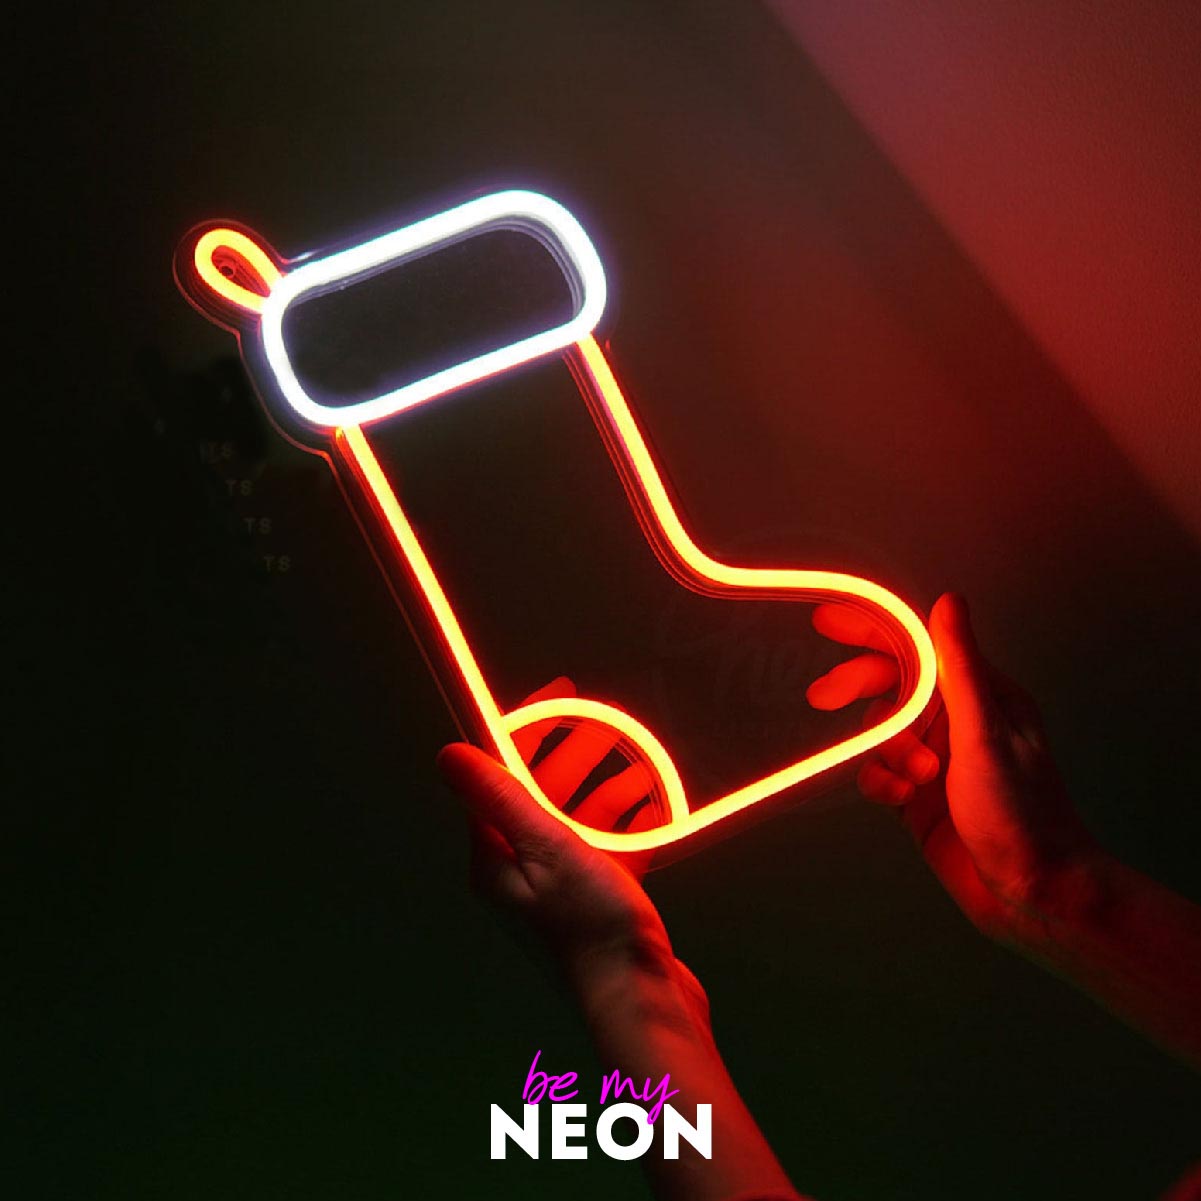 "Weihnachts - Deko" Leuchtmotiv aus LED Neon